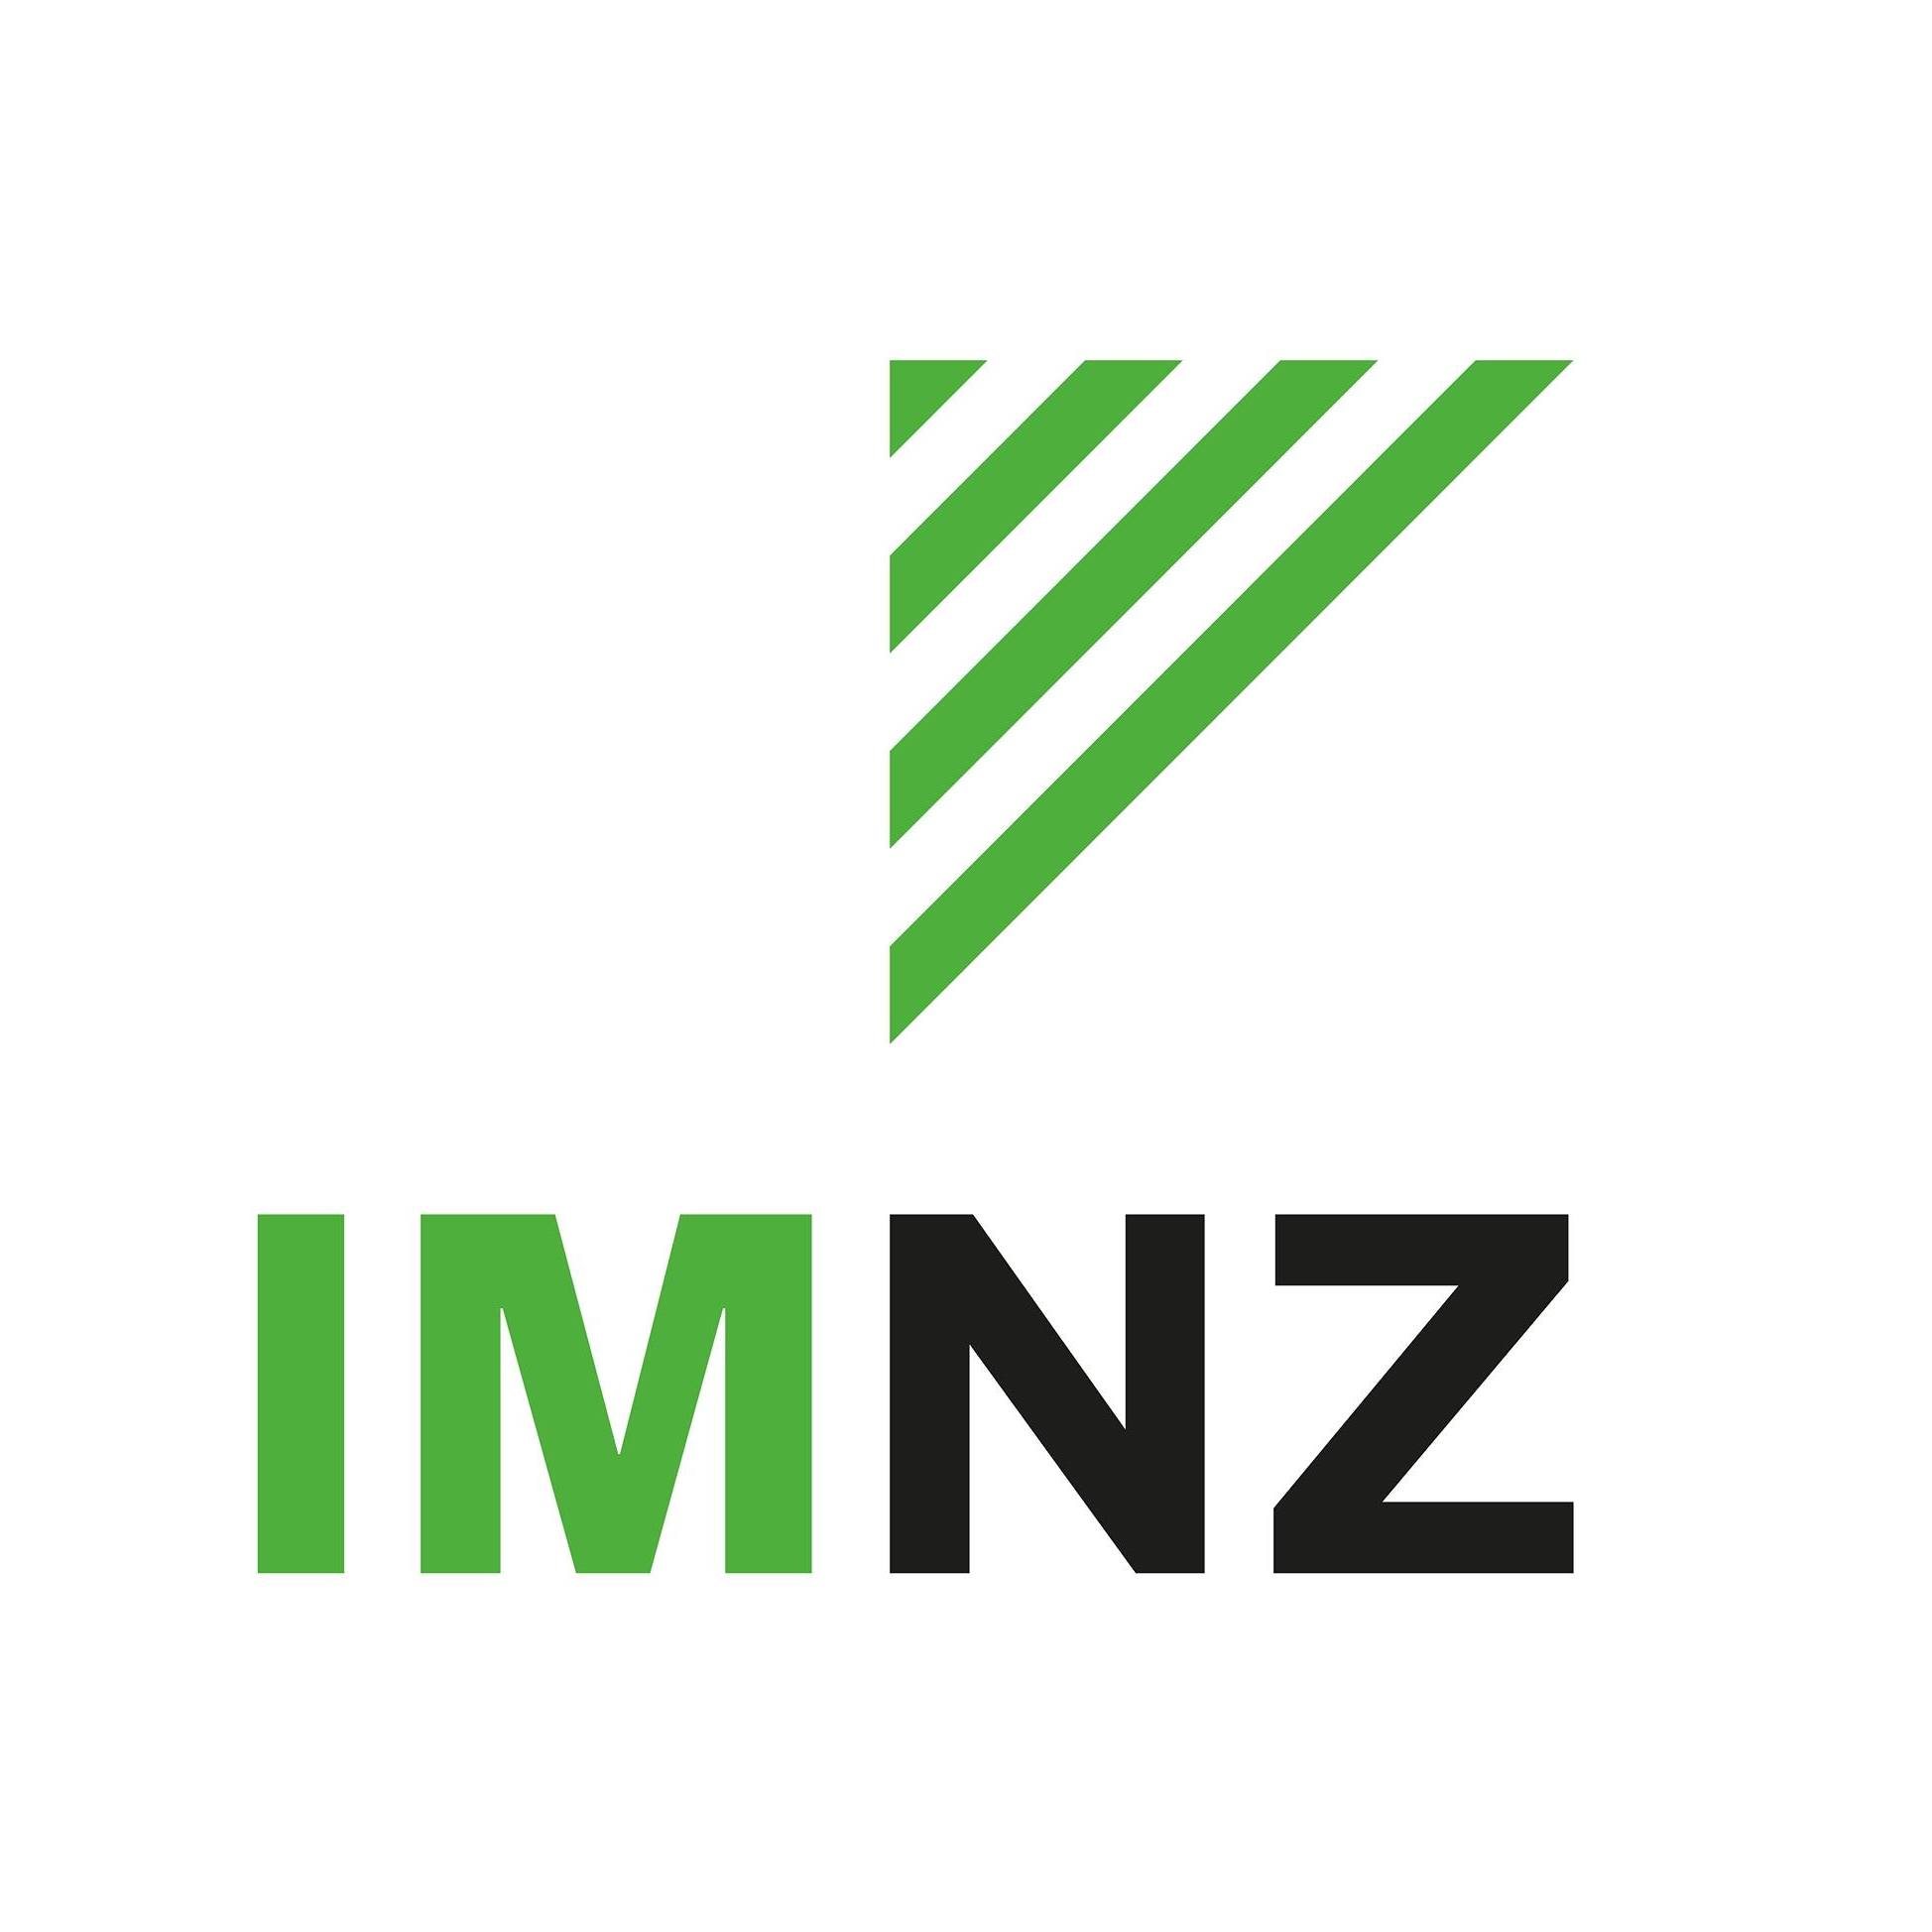 The Institute of Management Logo